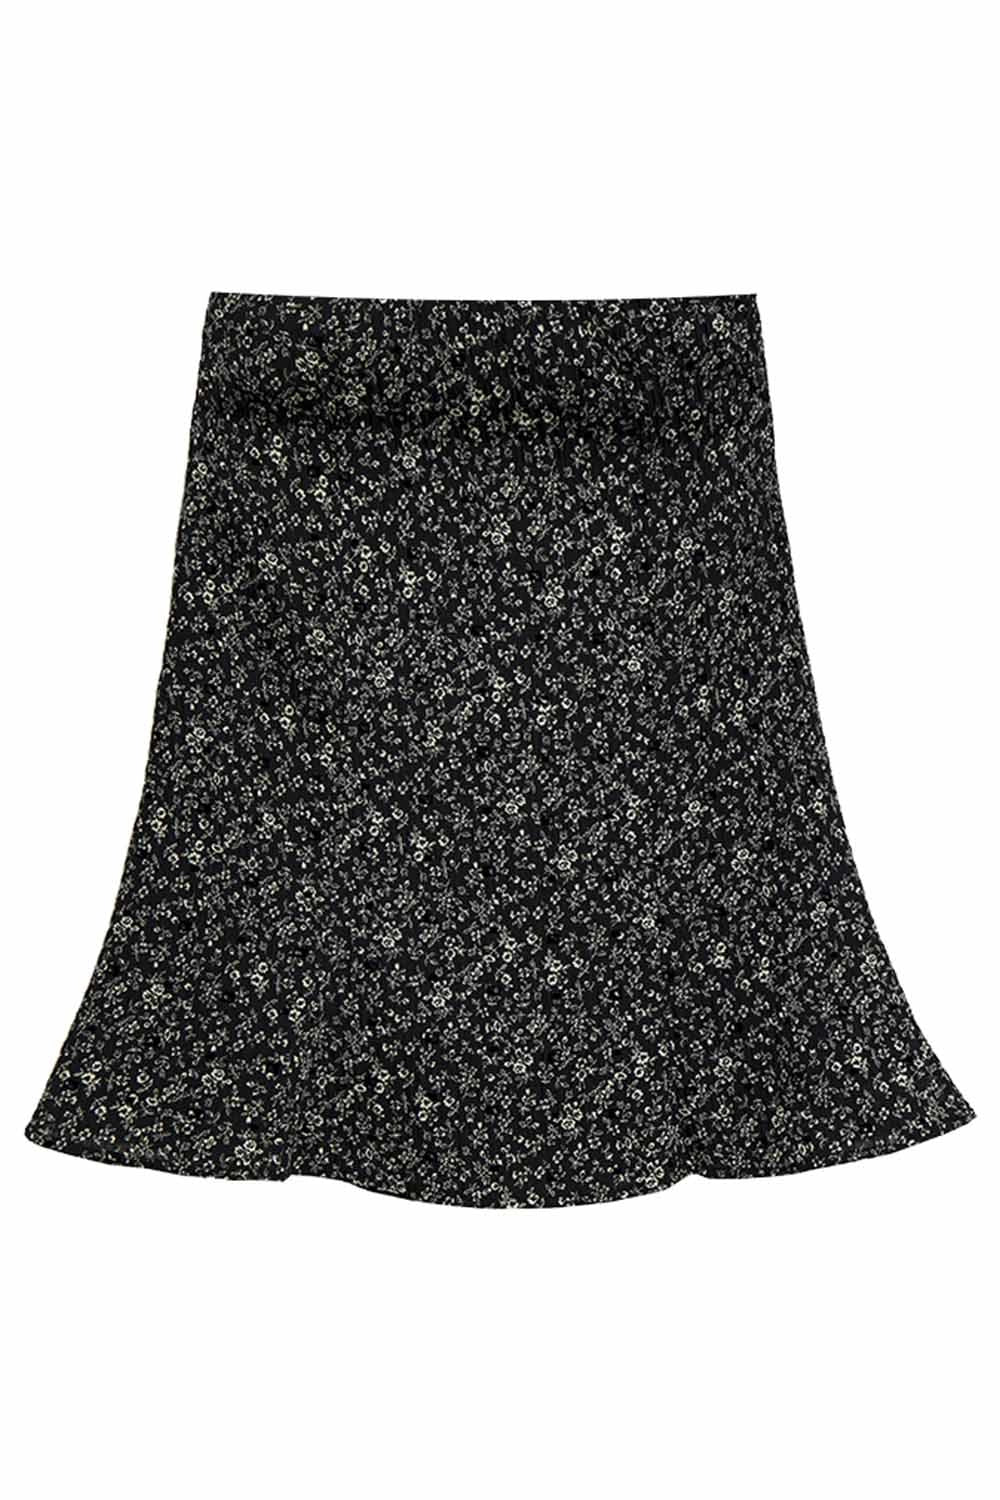 Skirt Mini Garis A Cetak Bunga Wanita